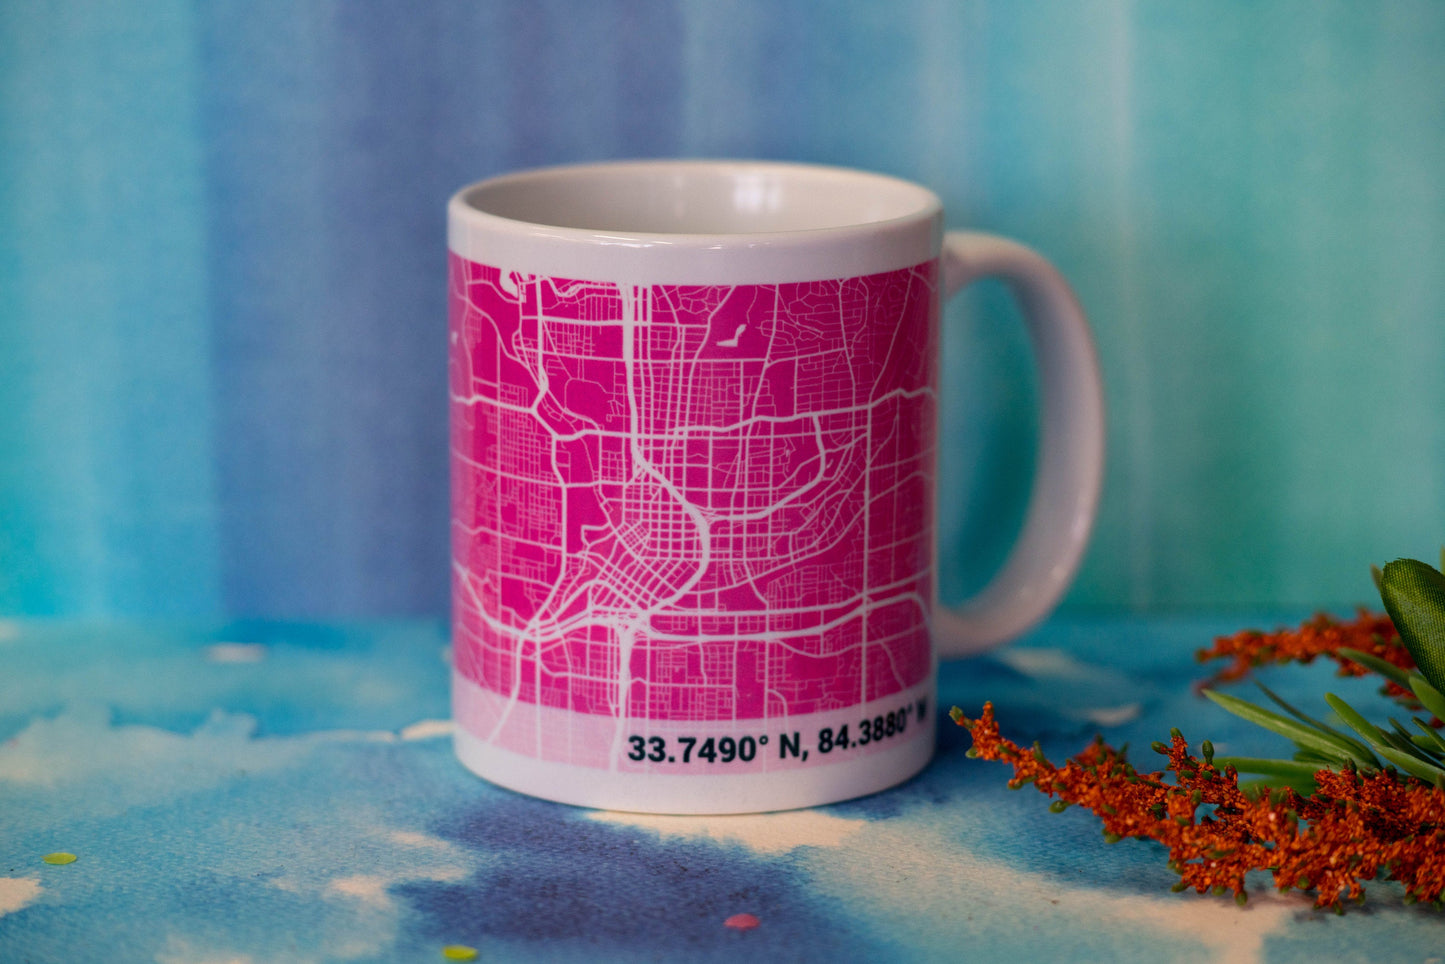 Personalized PINK City Map Mug